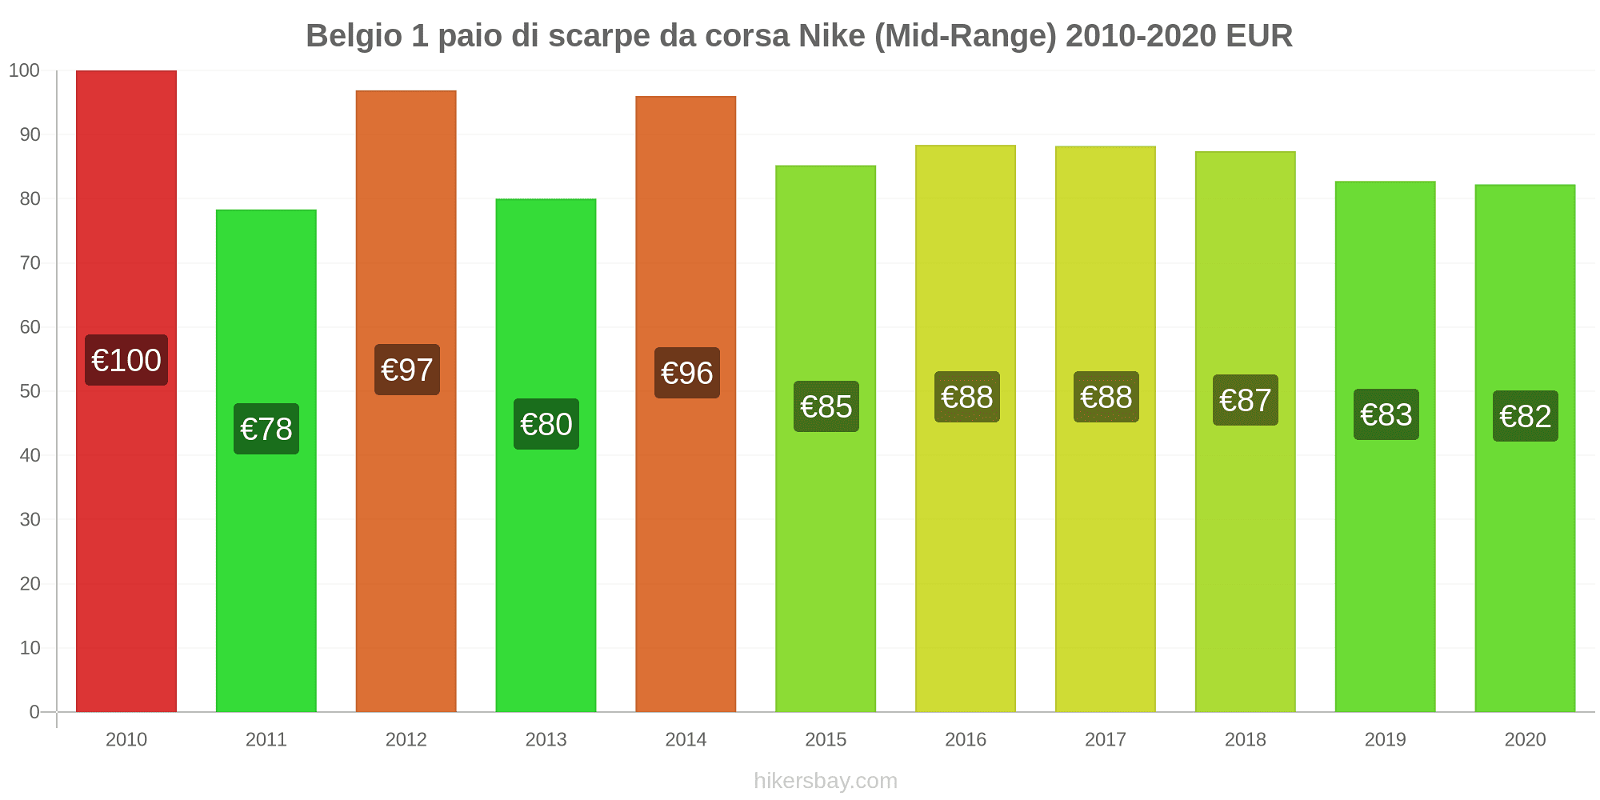 Belgio variazioni di prezzo 1 paio di scarpe da corsa Nike (simile) hikersbay.com